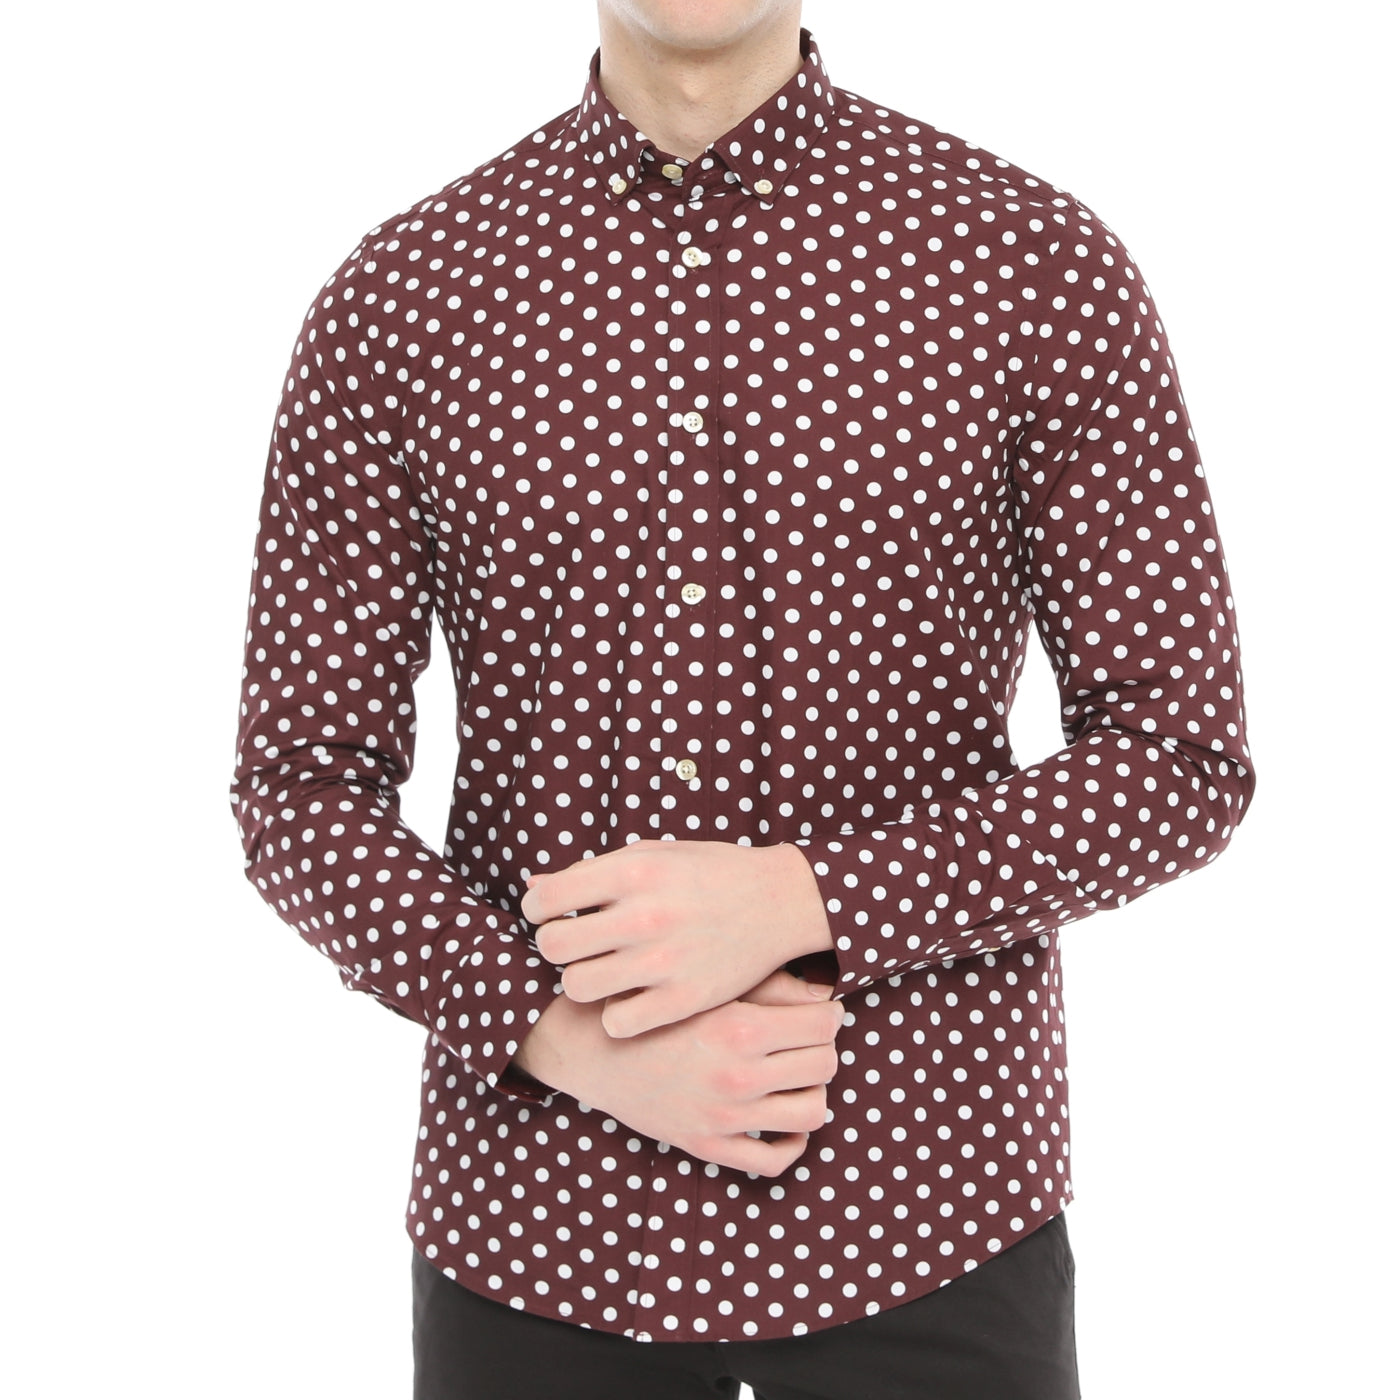 Xact Mens Polka Dot Shirt - Long Sleeved Mod Vintage-Main Image